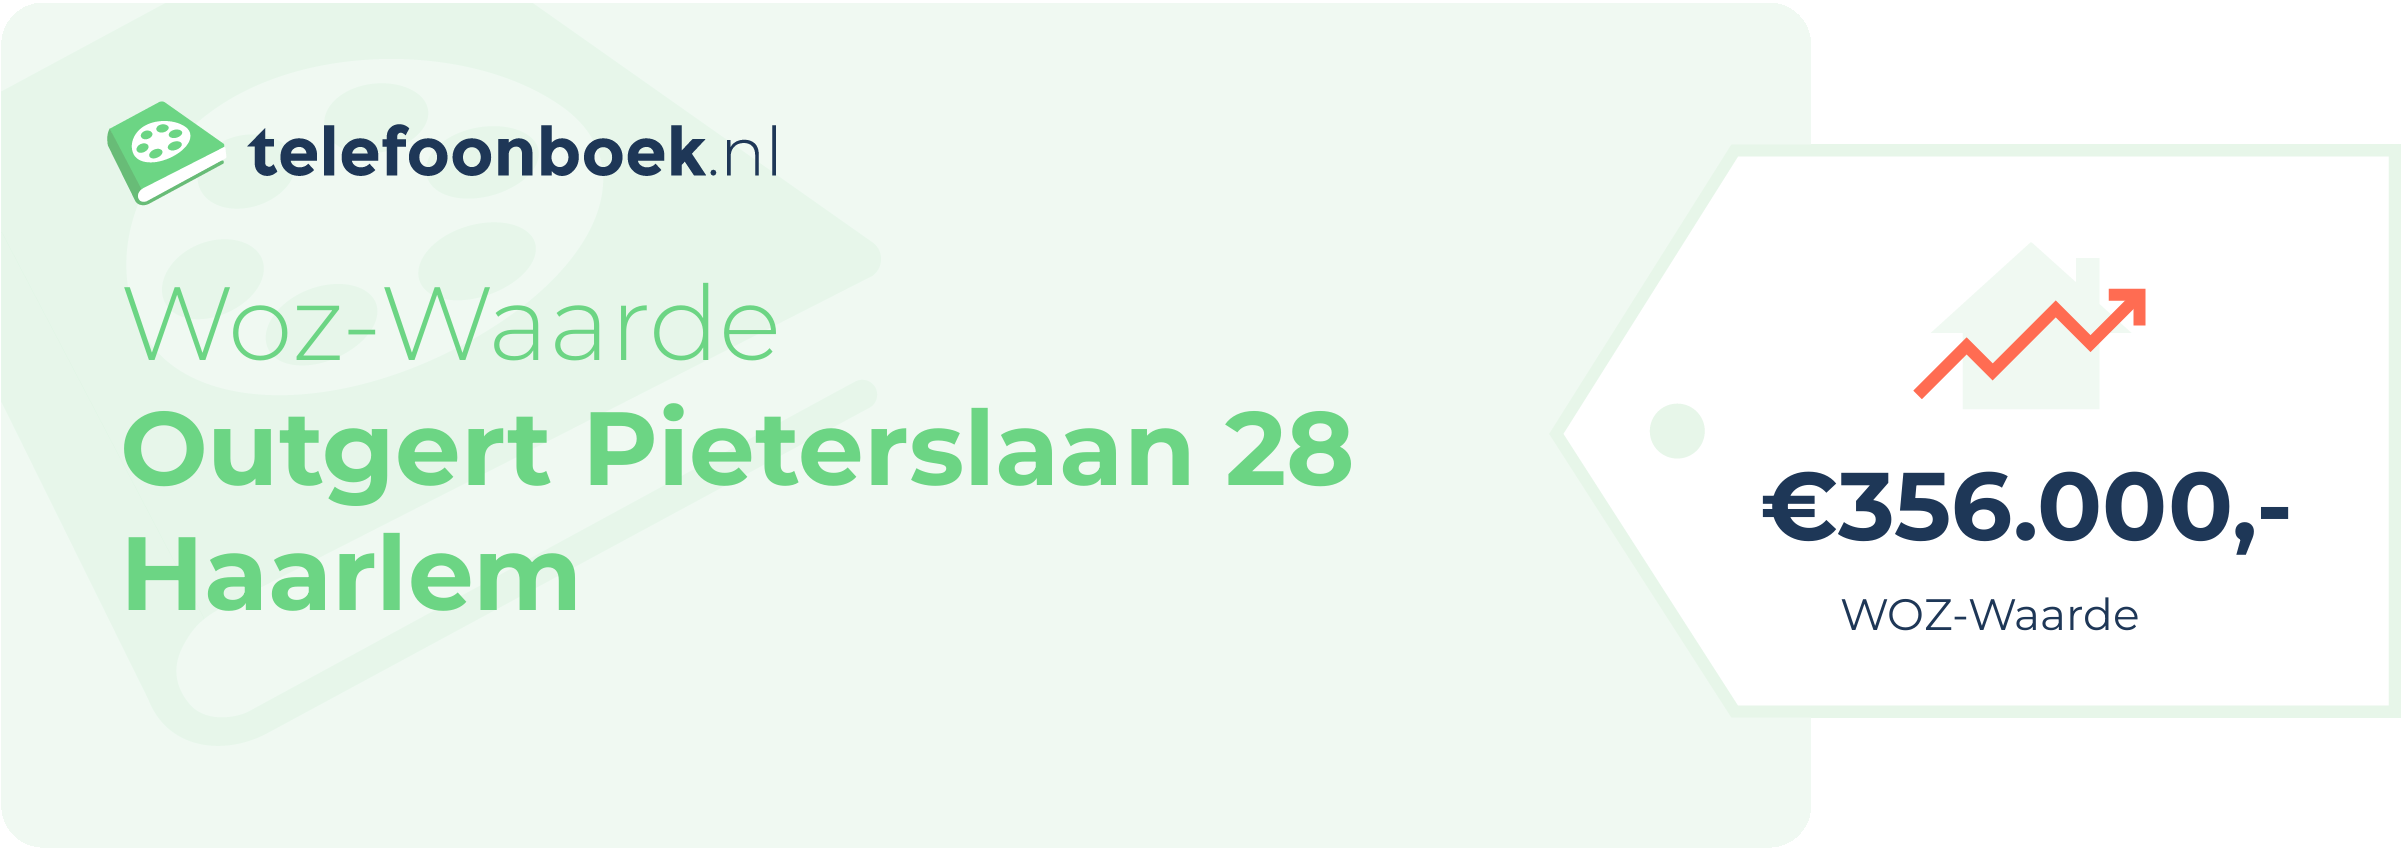 WOZ-waarde Outgert Pieterslaan 28 Haarlem